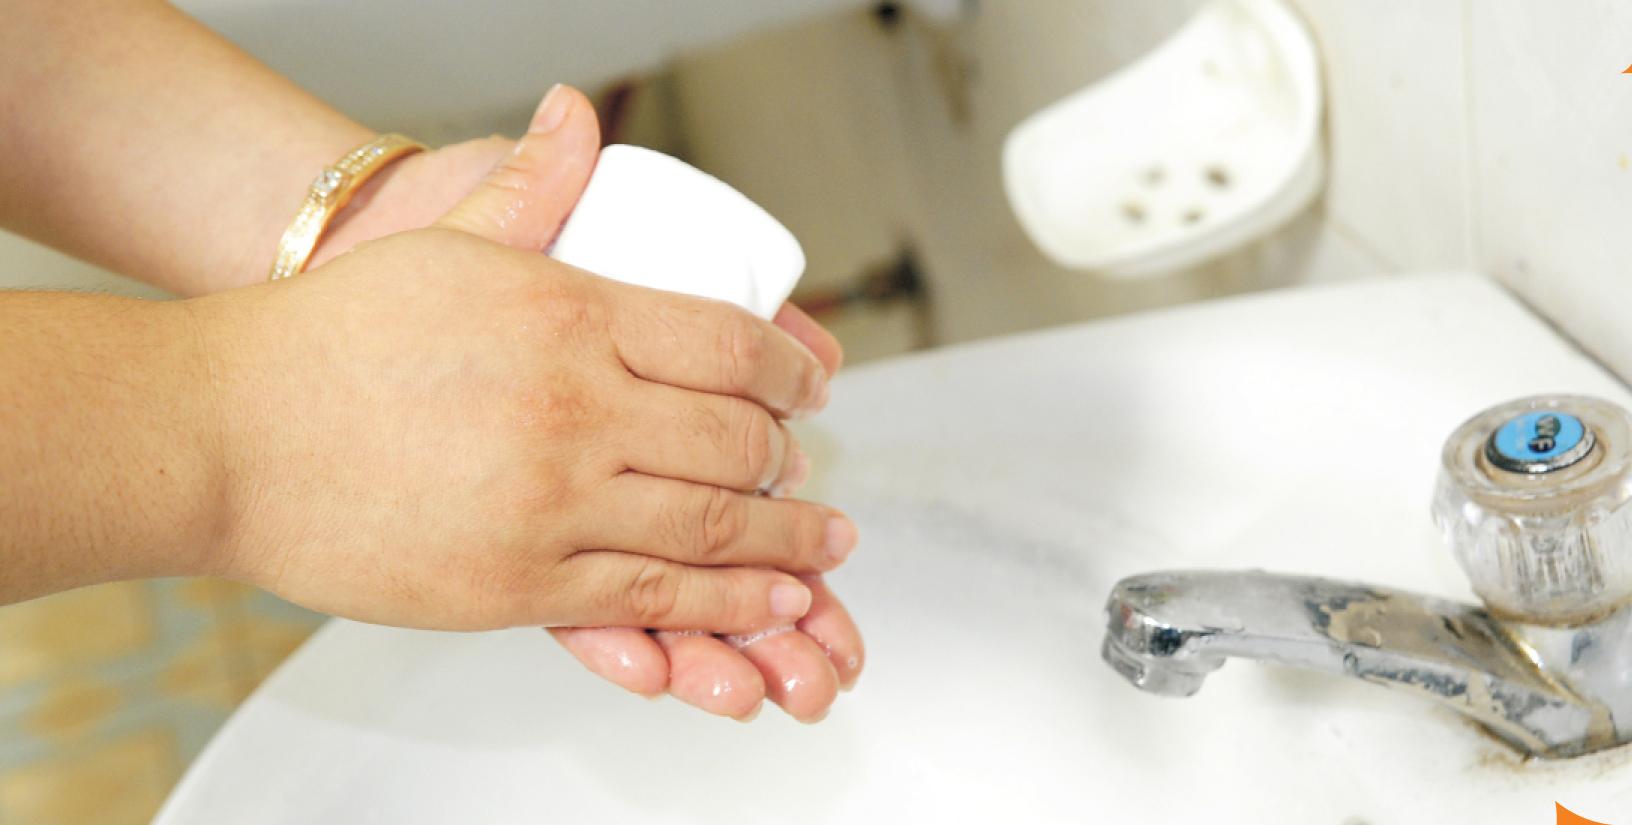 Rửa tay bằng xà phòng là biện pháp ngăn chặn virus MERS cũng như nhiều chứng bệnh nguy hiểm khác lây lan